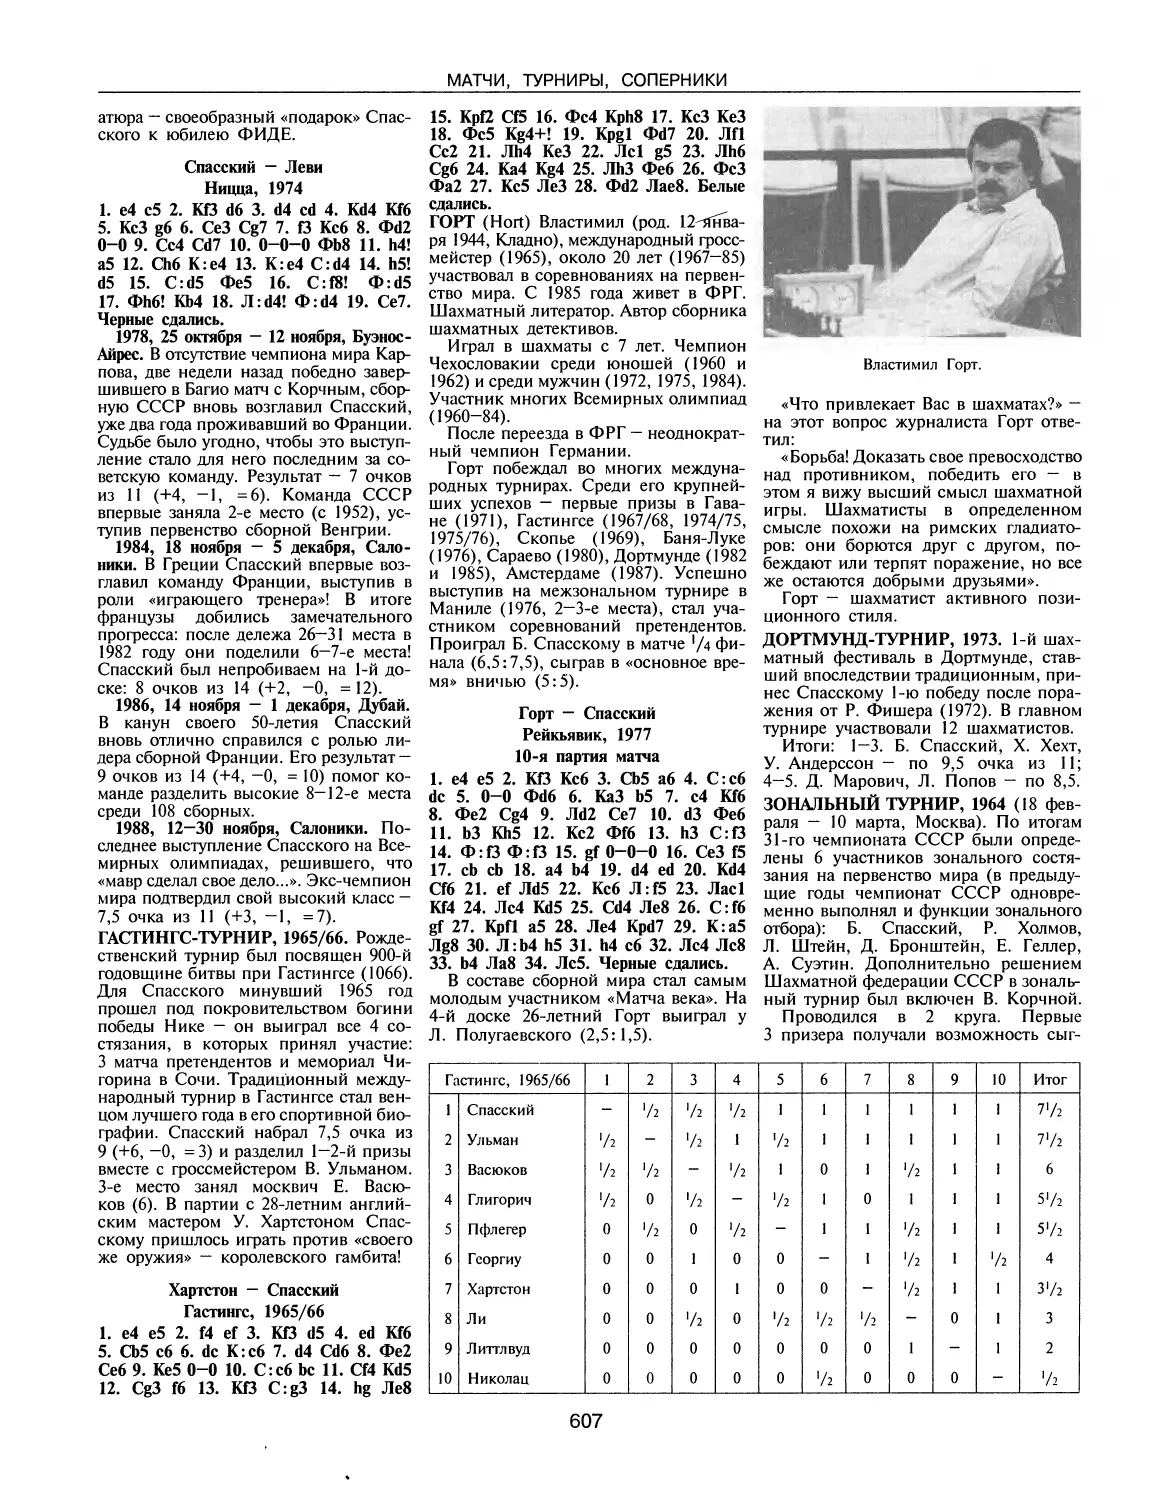 Гастингс-турнир, 1965/66
Горт В.
Дортмунд-турнир, 1973
Зональный турнир, 1964